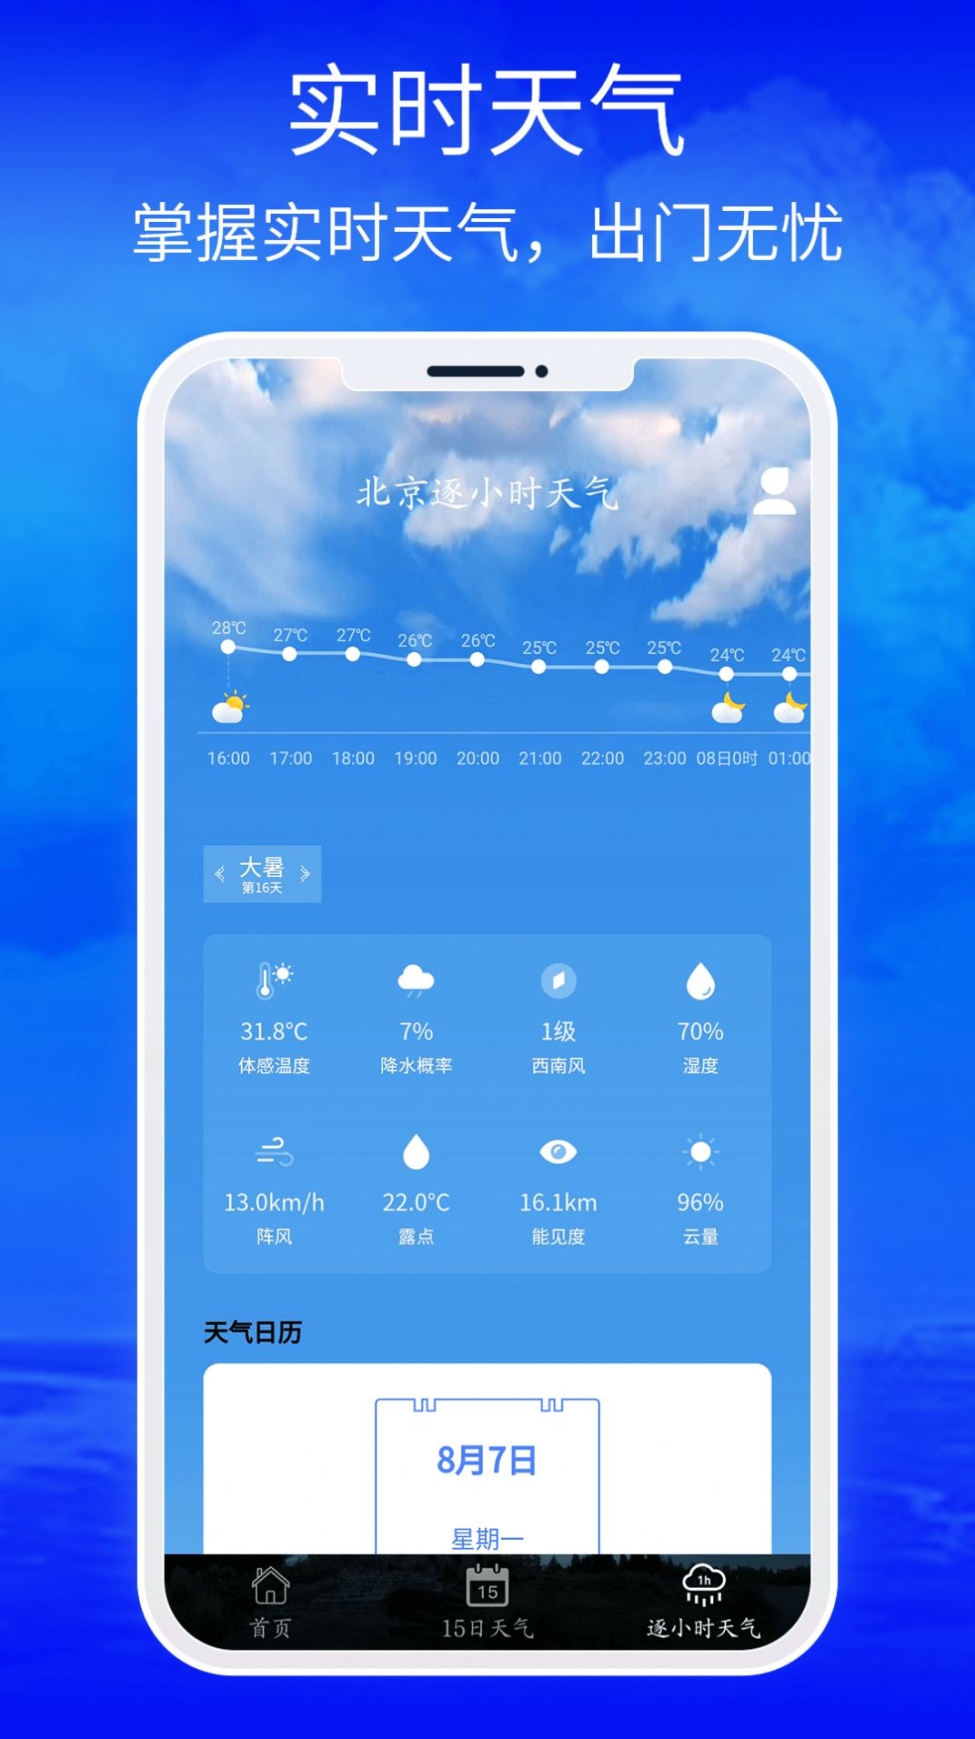 睿睿黄历天气最新版app v1.0截图1